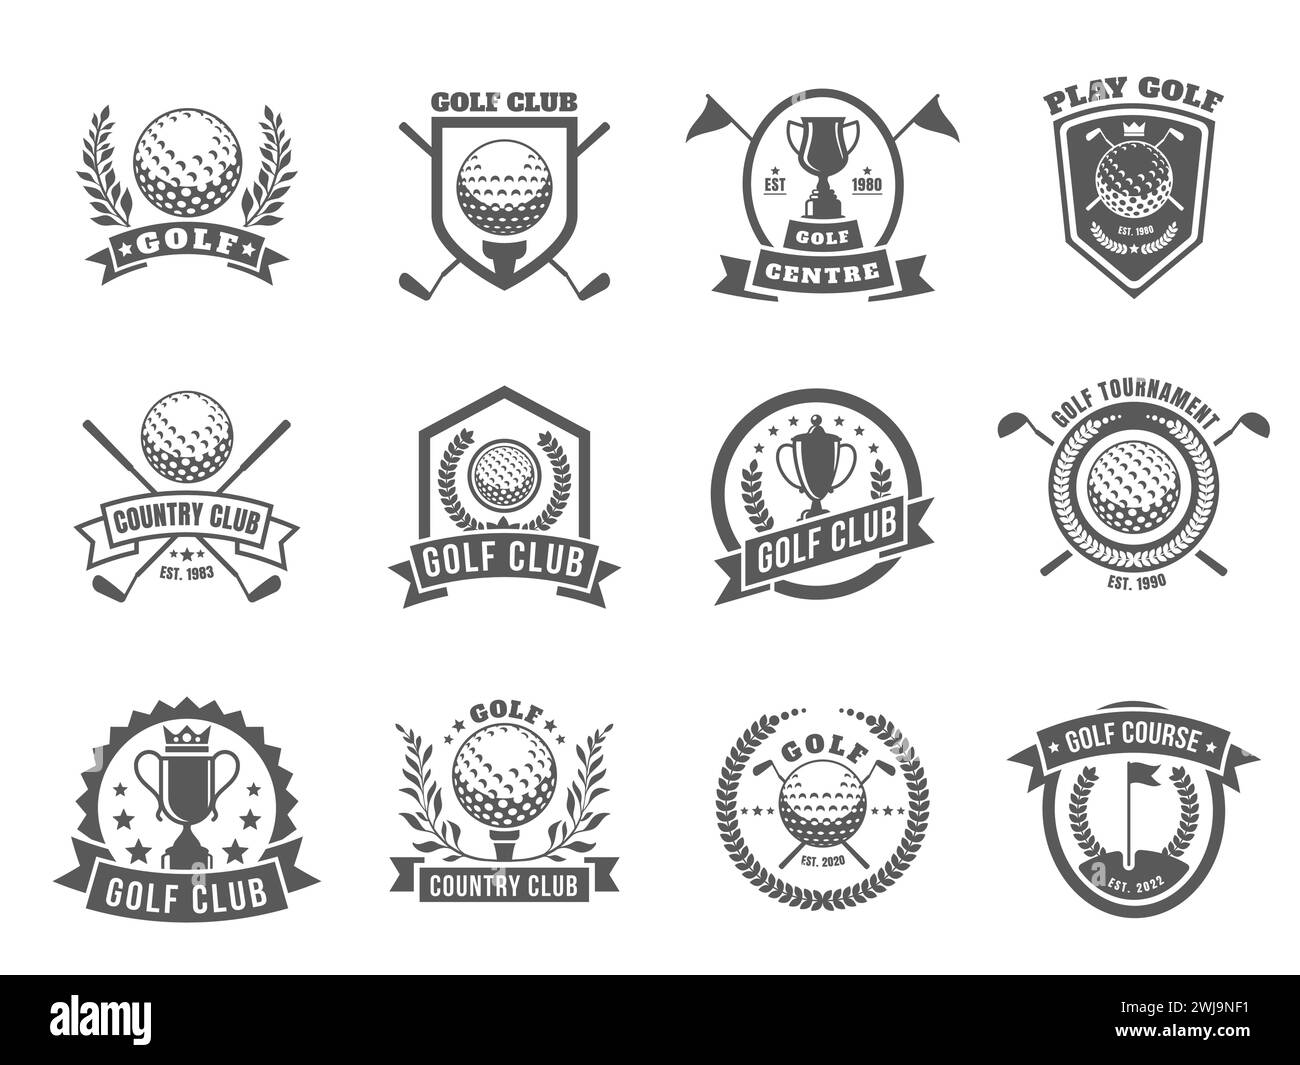 Golf-Logo. Emblem-Abzeichen mit Golfschlägern und Bälle für den Golfplatz, Retro-Country-Club-Abzeichen mit Abschlag und Ball. Vektor-isolierter Satz Stock Vektor